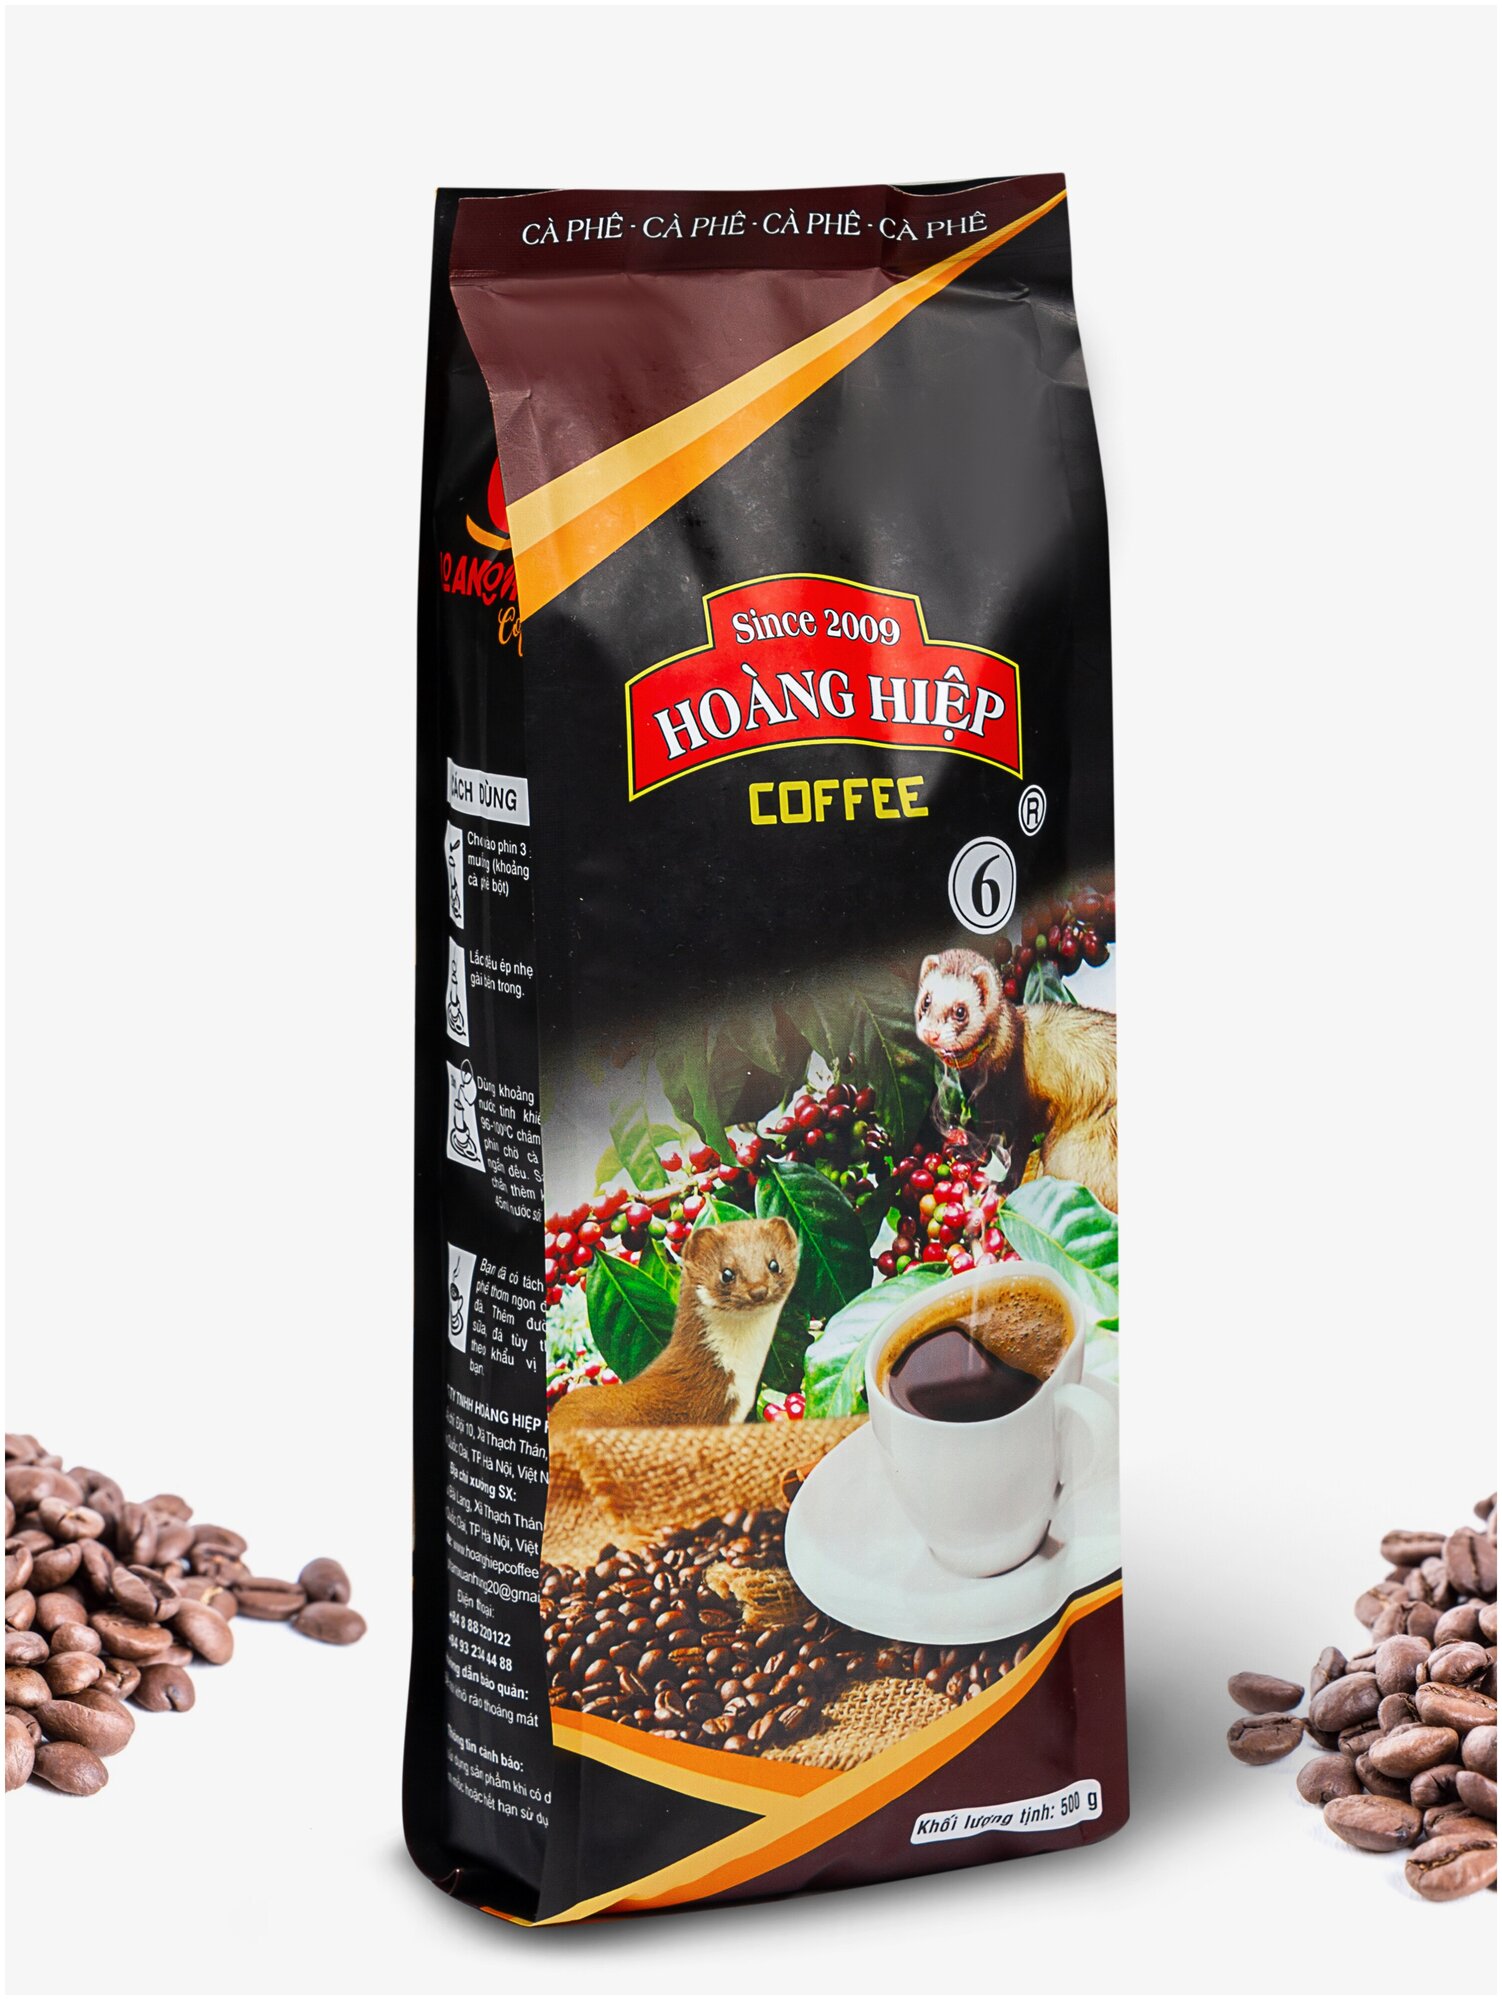 Вьетнамский ферментированный кофе в зернах Копи лювак ( luwak ), 500гр, Hoang Hiep, Вьетнам